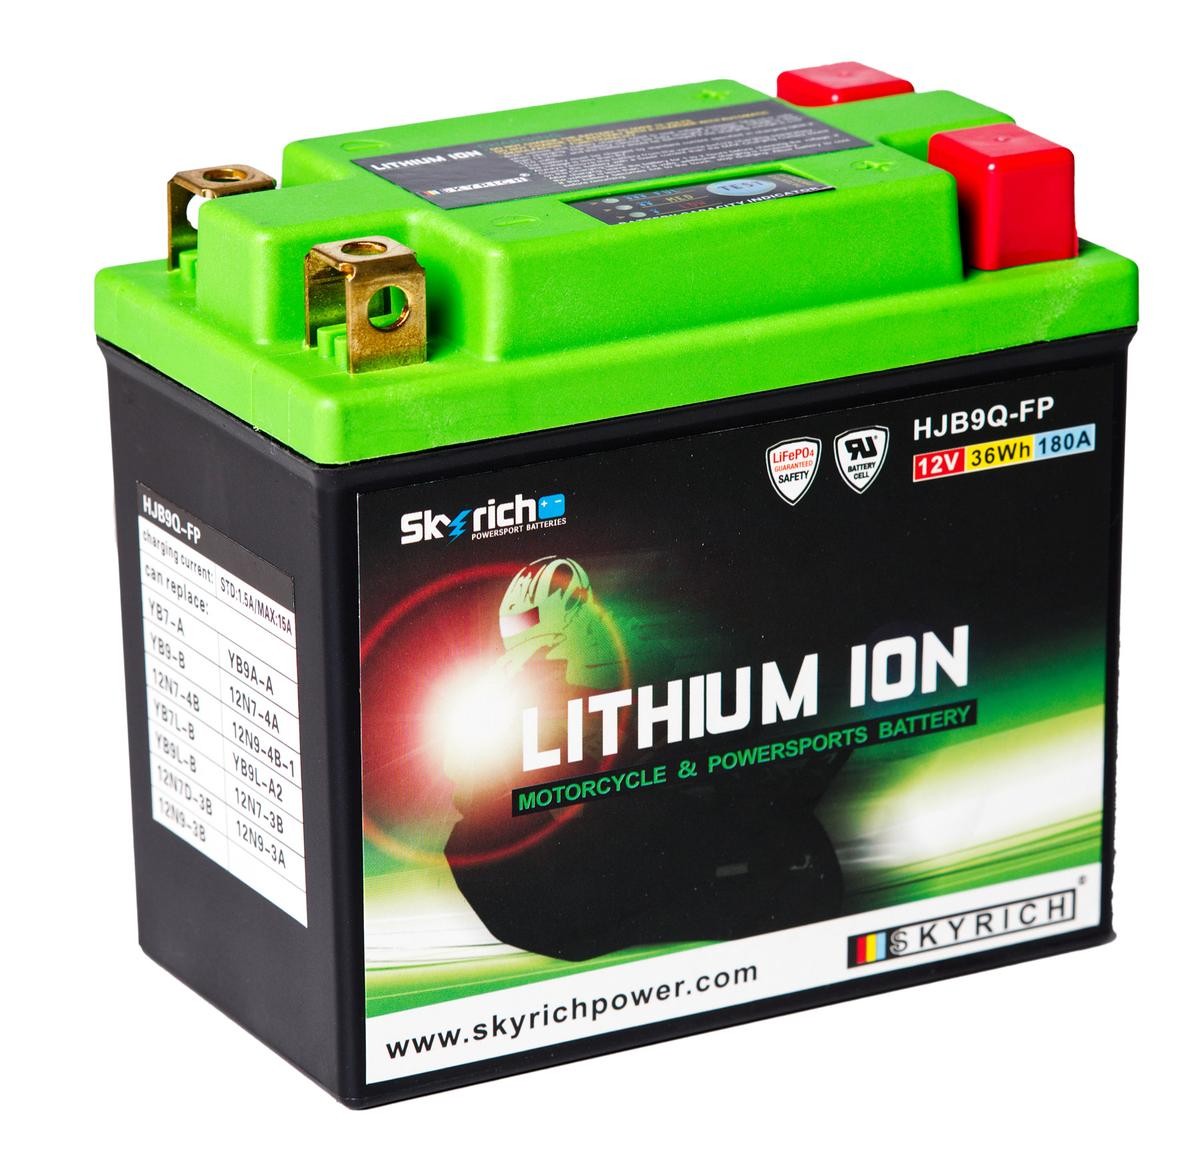 VESPA ET Batterie 12V 3Ah 180A N Li-Ionen-Batterie SKYRICH LITHIUM ION HJB9Q-FP